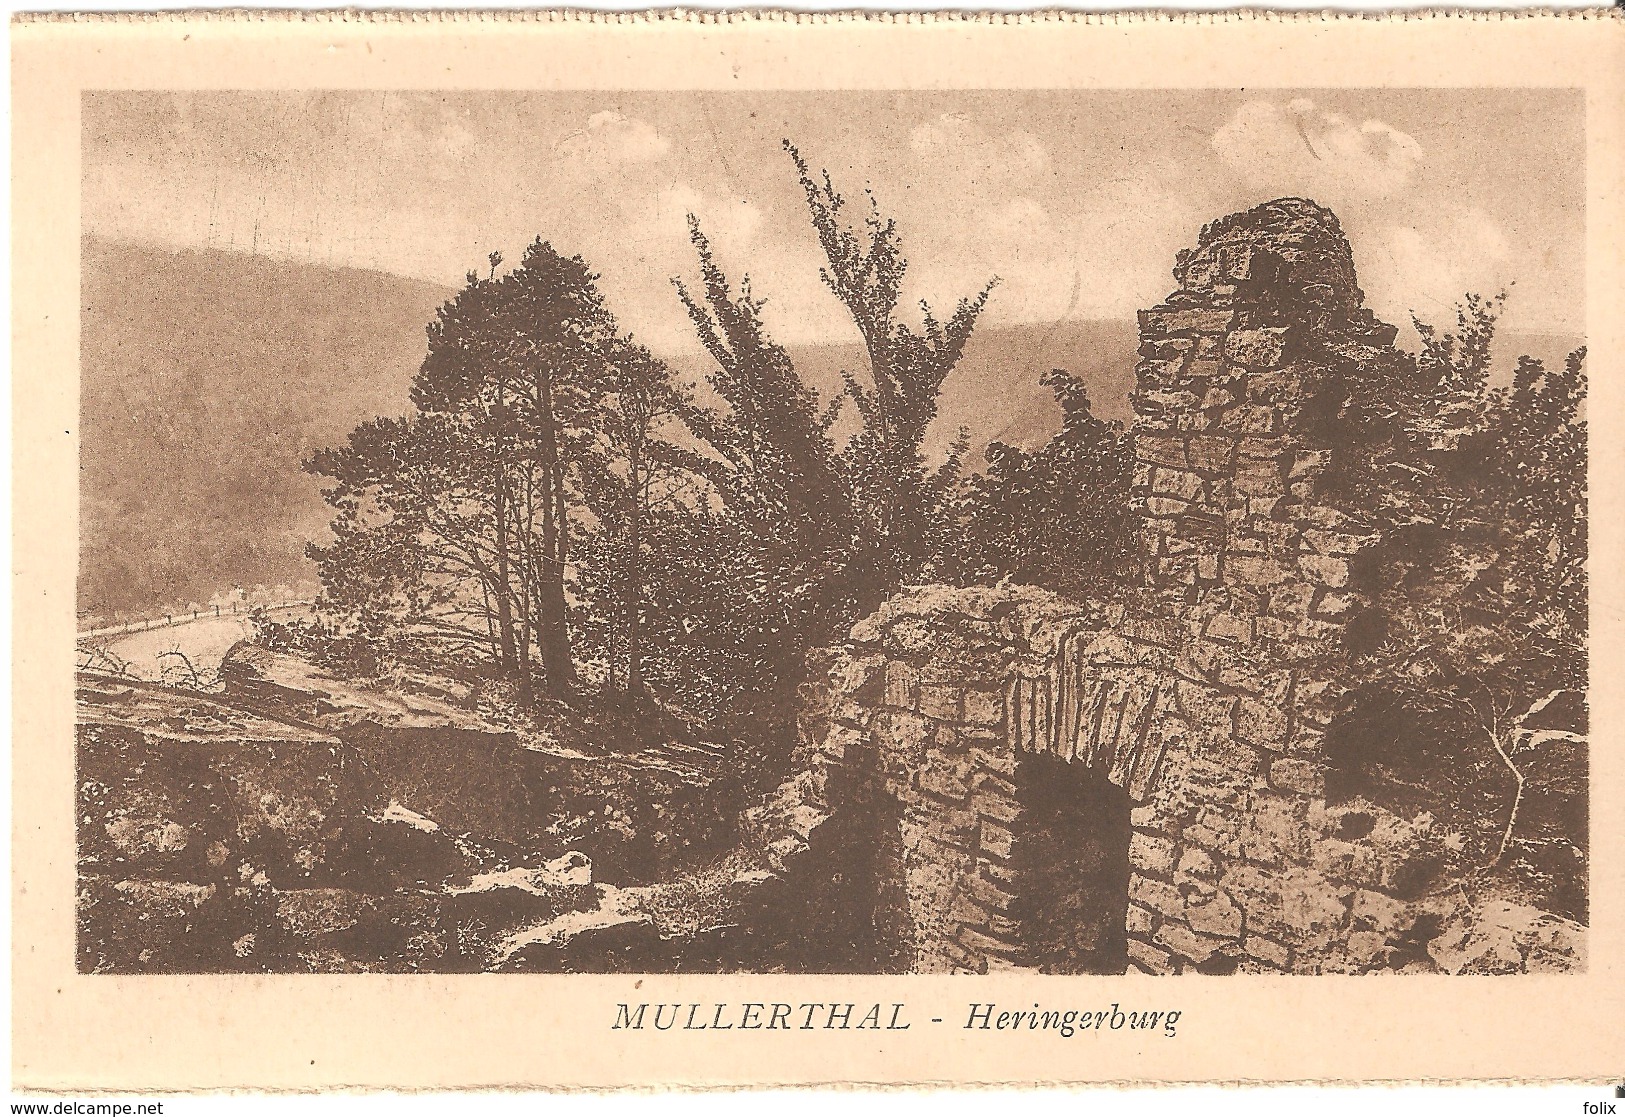 Müllerthal - Heringerburg - Muellerthal